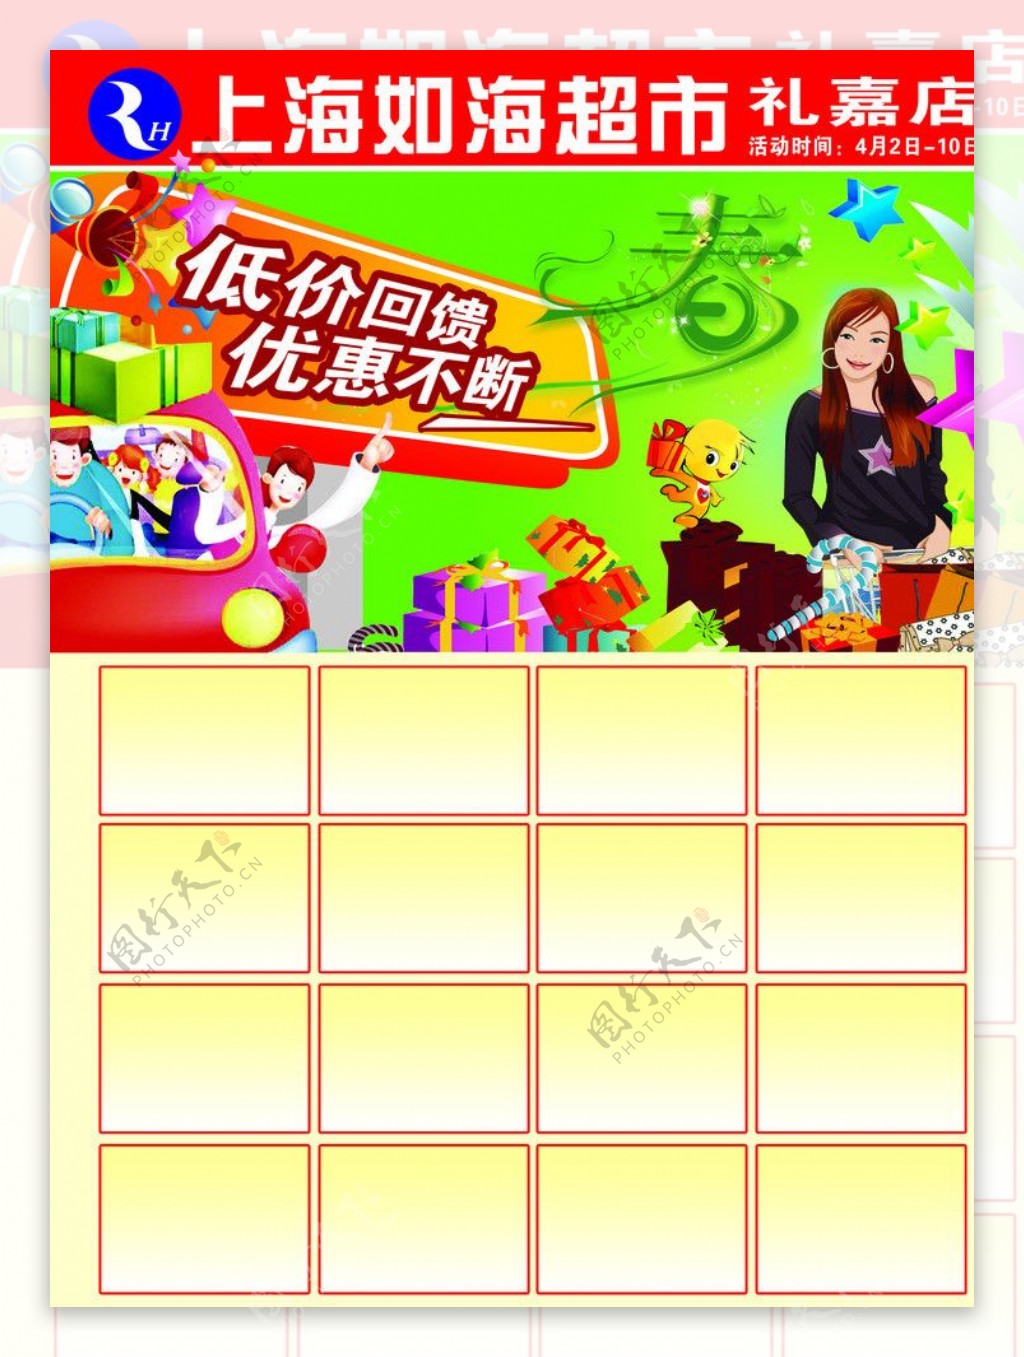 华联超市宣传单图片